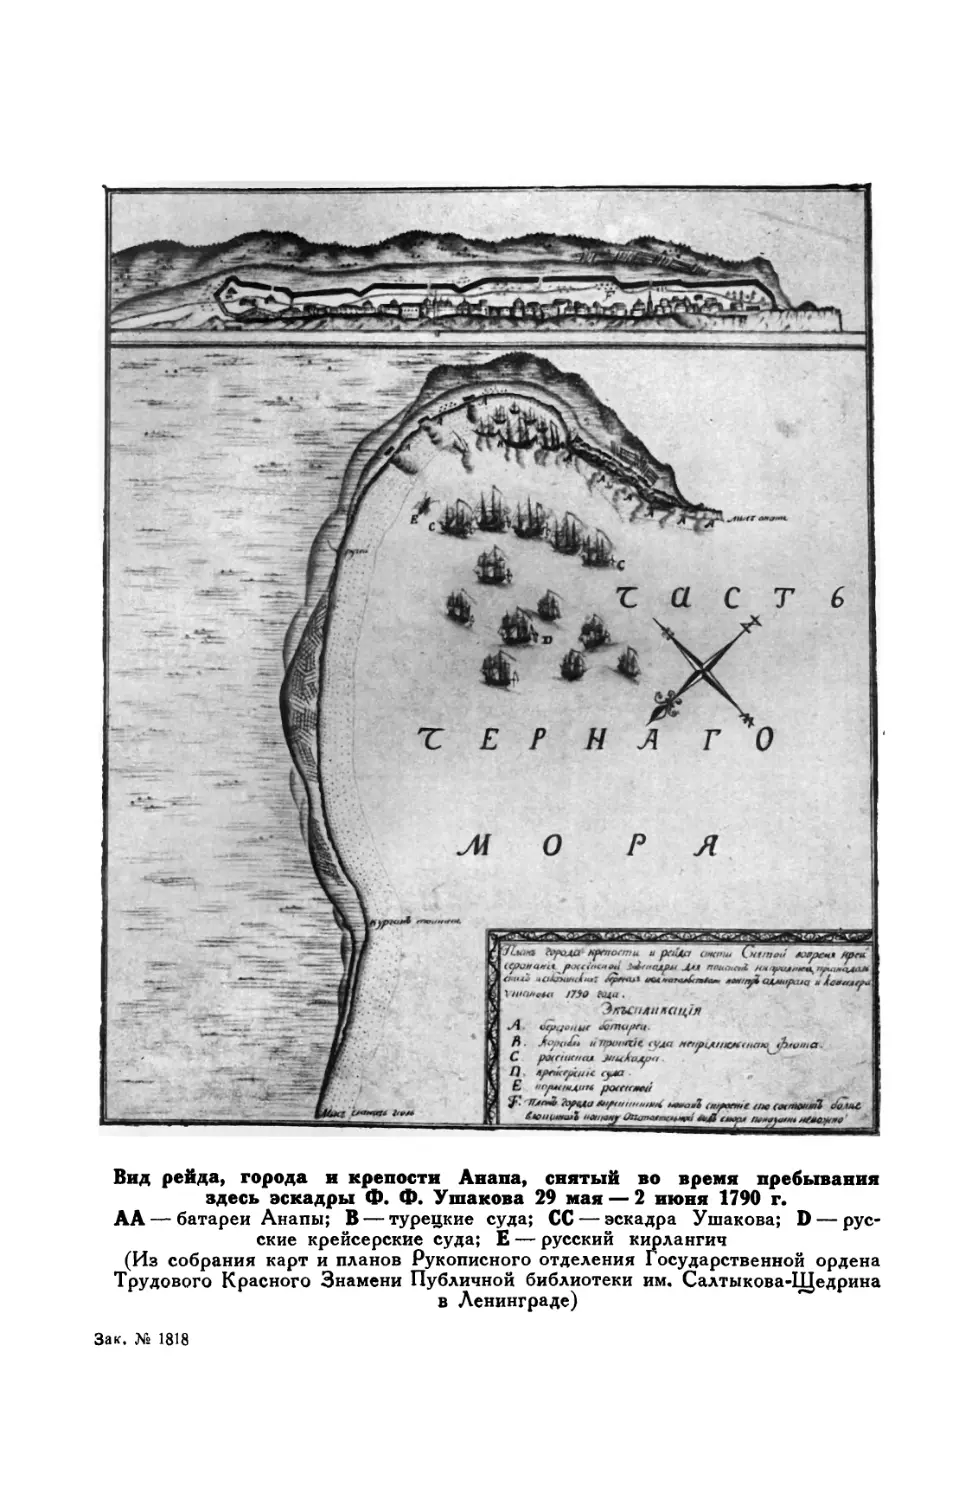 Вклейка. Вид рейда, города и крепости Анапа, снятый во время пребывания здесь эскадры Ф. Ф. Ушакова 29 мая — 2 июня 1790 г.